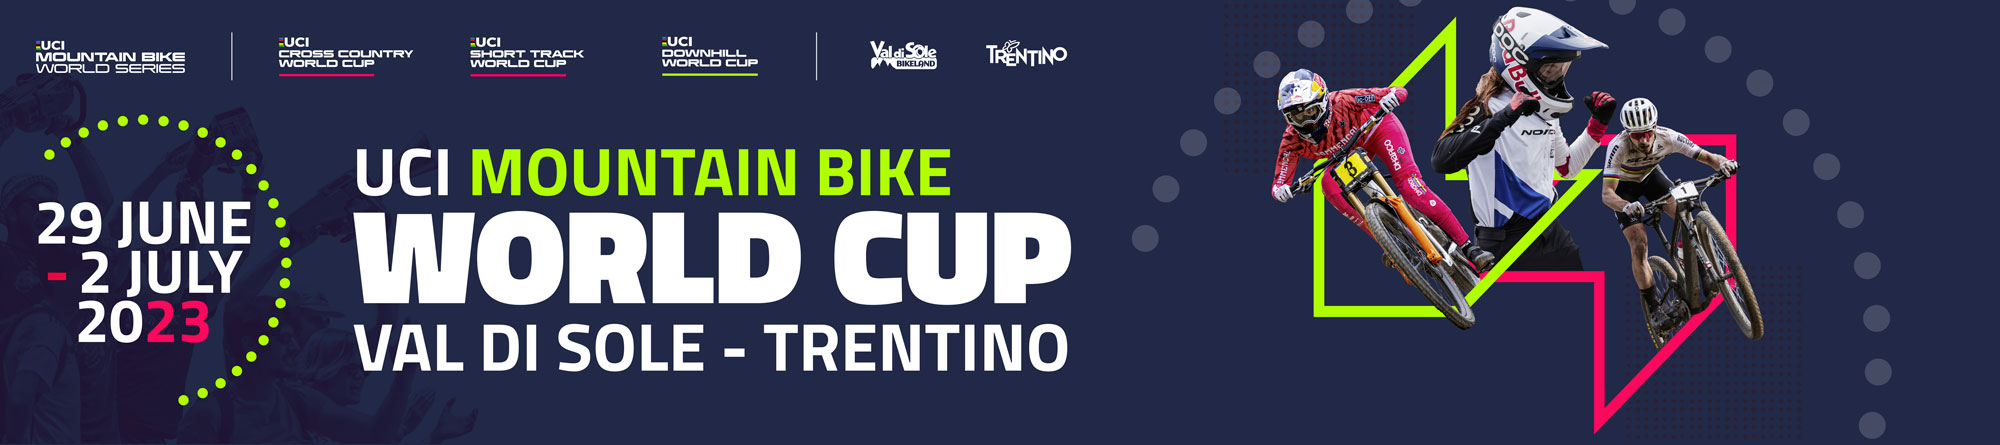 Ordini di partenza e classifiche - UCI Mountain Bike World Cup 2023